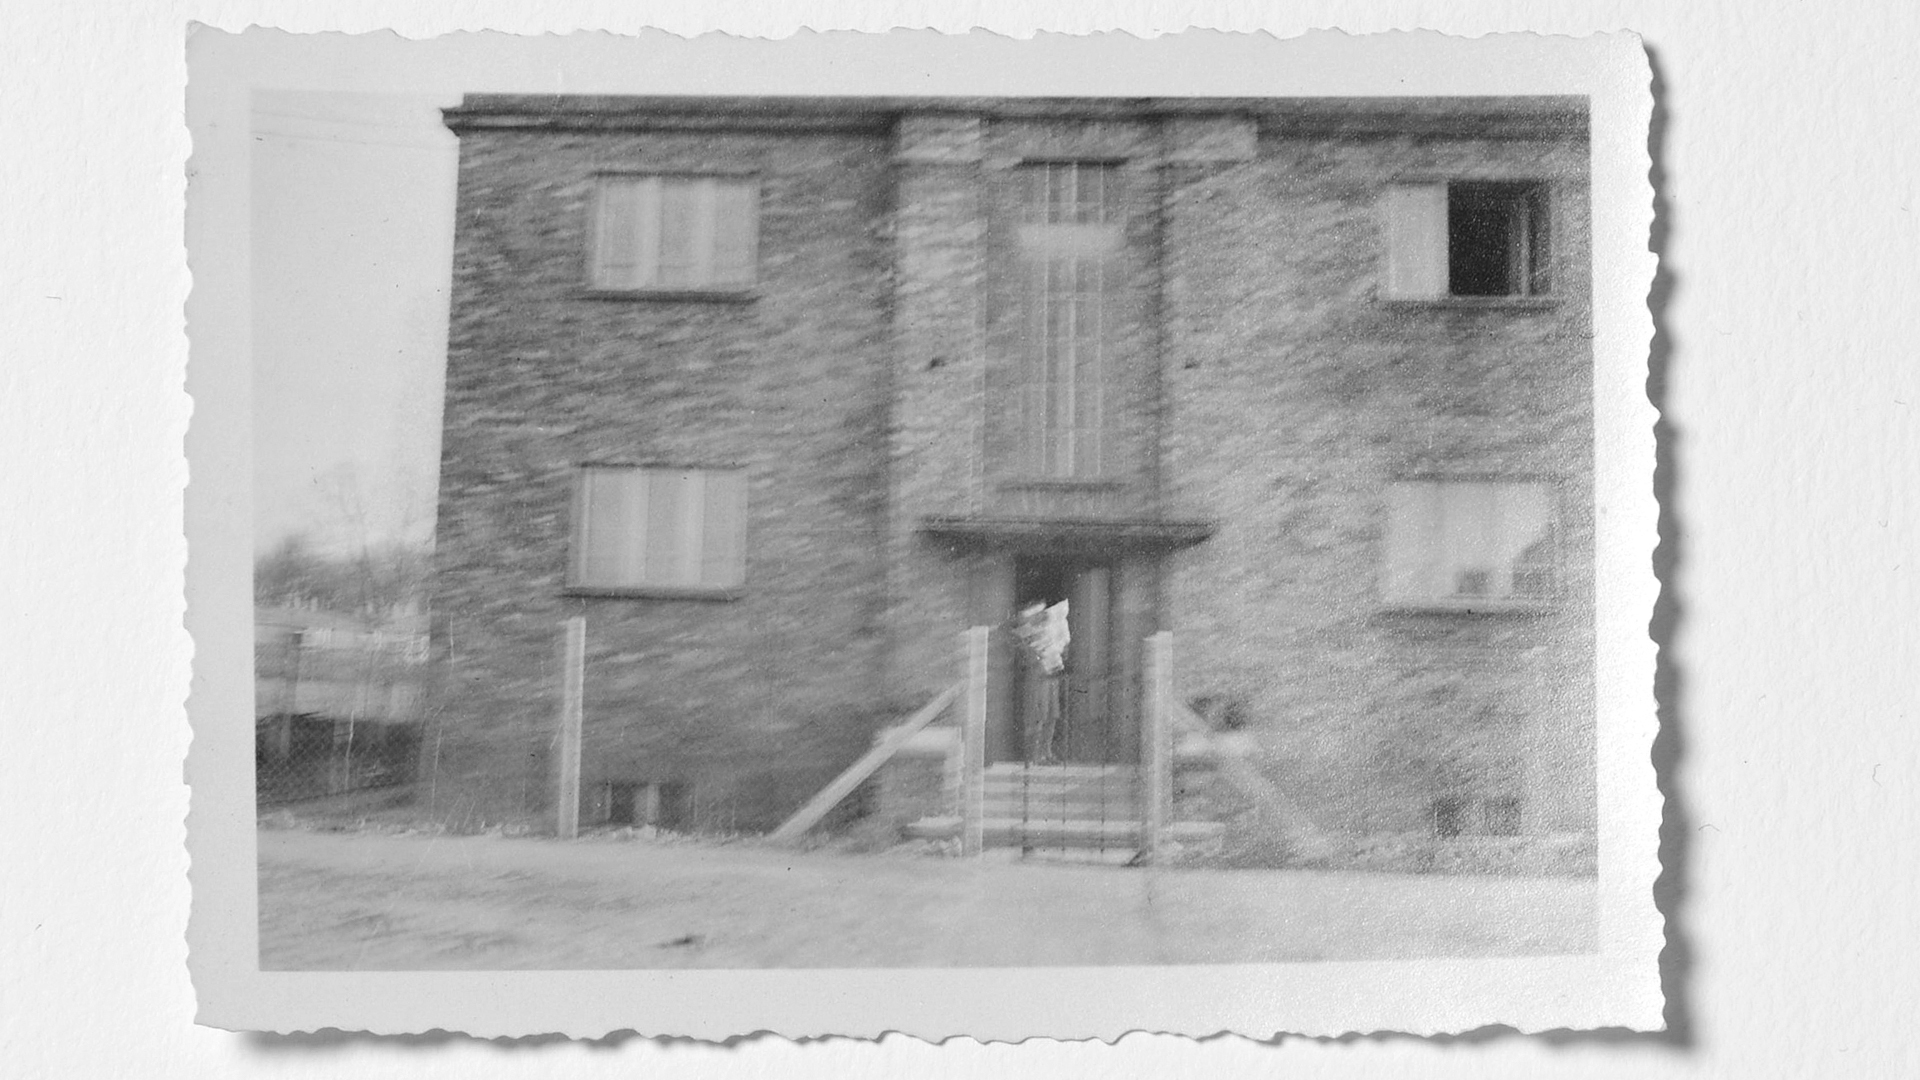 Hilde Bonhage fotografierte das Haus am Nordwall in Posen im Oktober 1940. Unscharf zu erkennen: eine Frau mit Kind, die bis zur rechtswidrigen Vertreibung im Haus gewohnt haben dürfte.